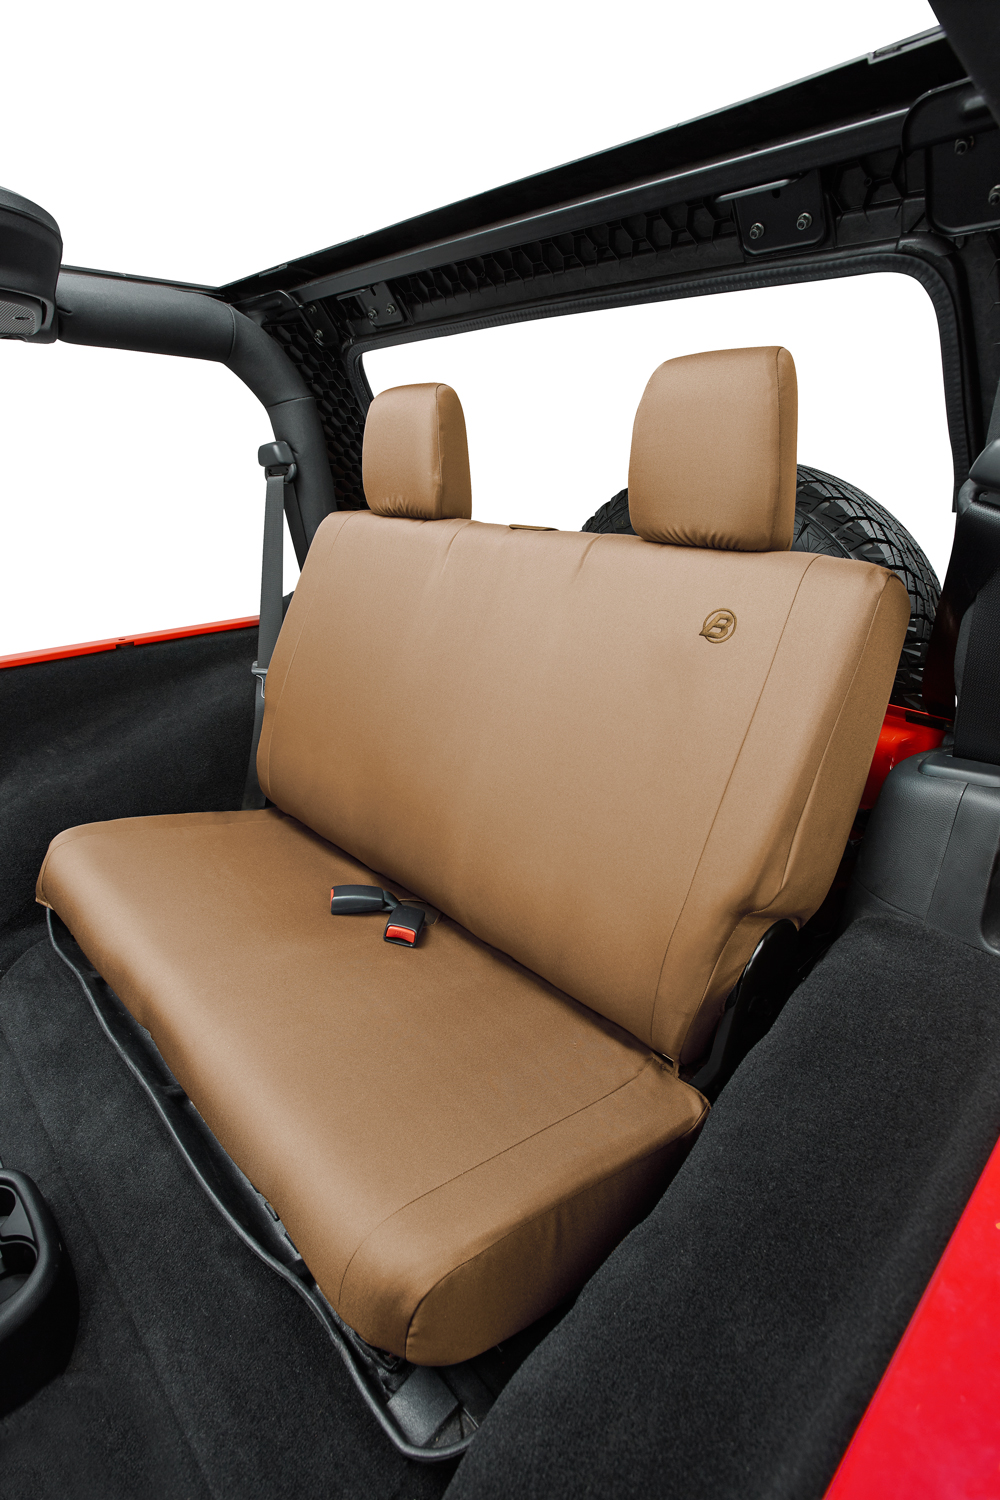 👉Bestop Jeep JK Seat Covers Rear Bench 07-17 Jeep Wrangler JK 2 Door Tan  Each Bestop 29282-04 » GodSpeed Off-Road